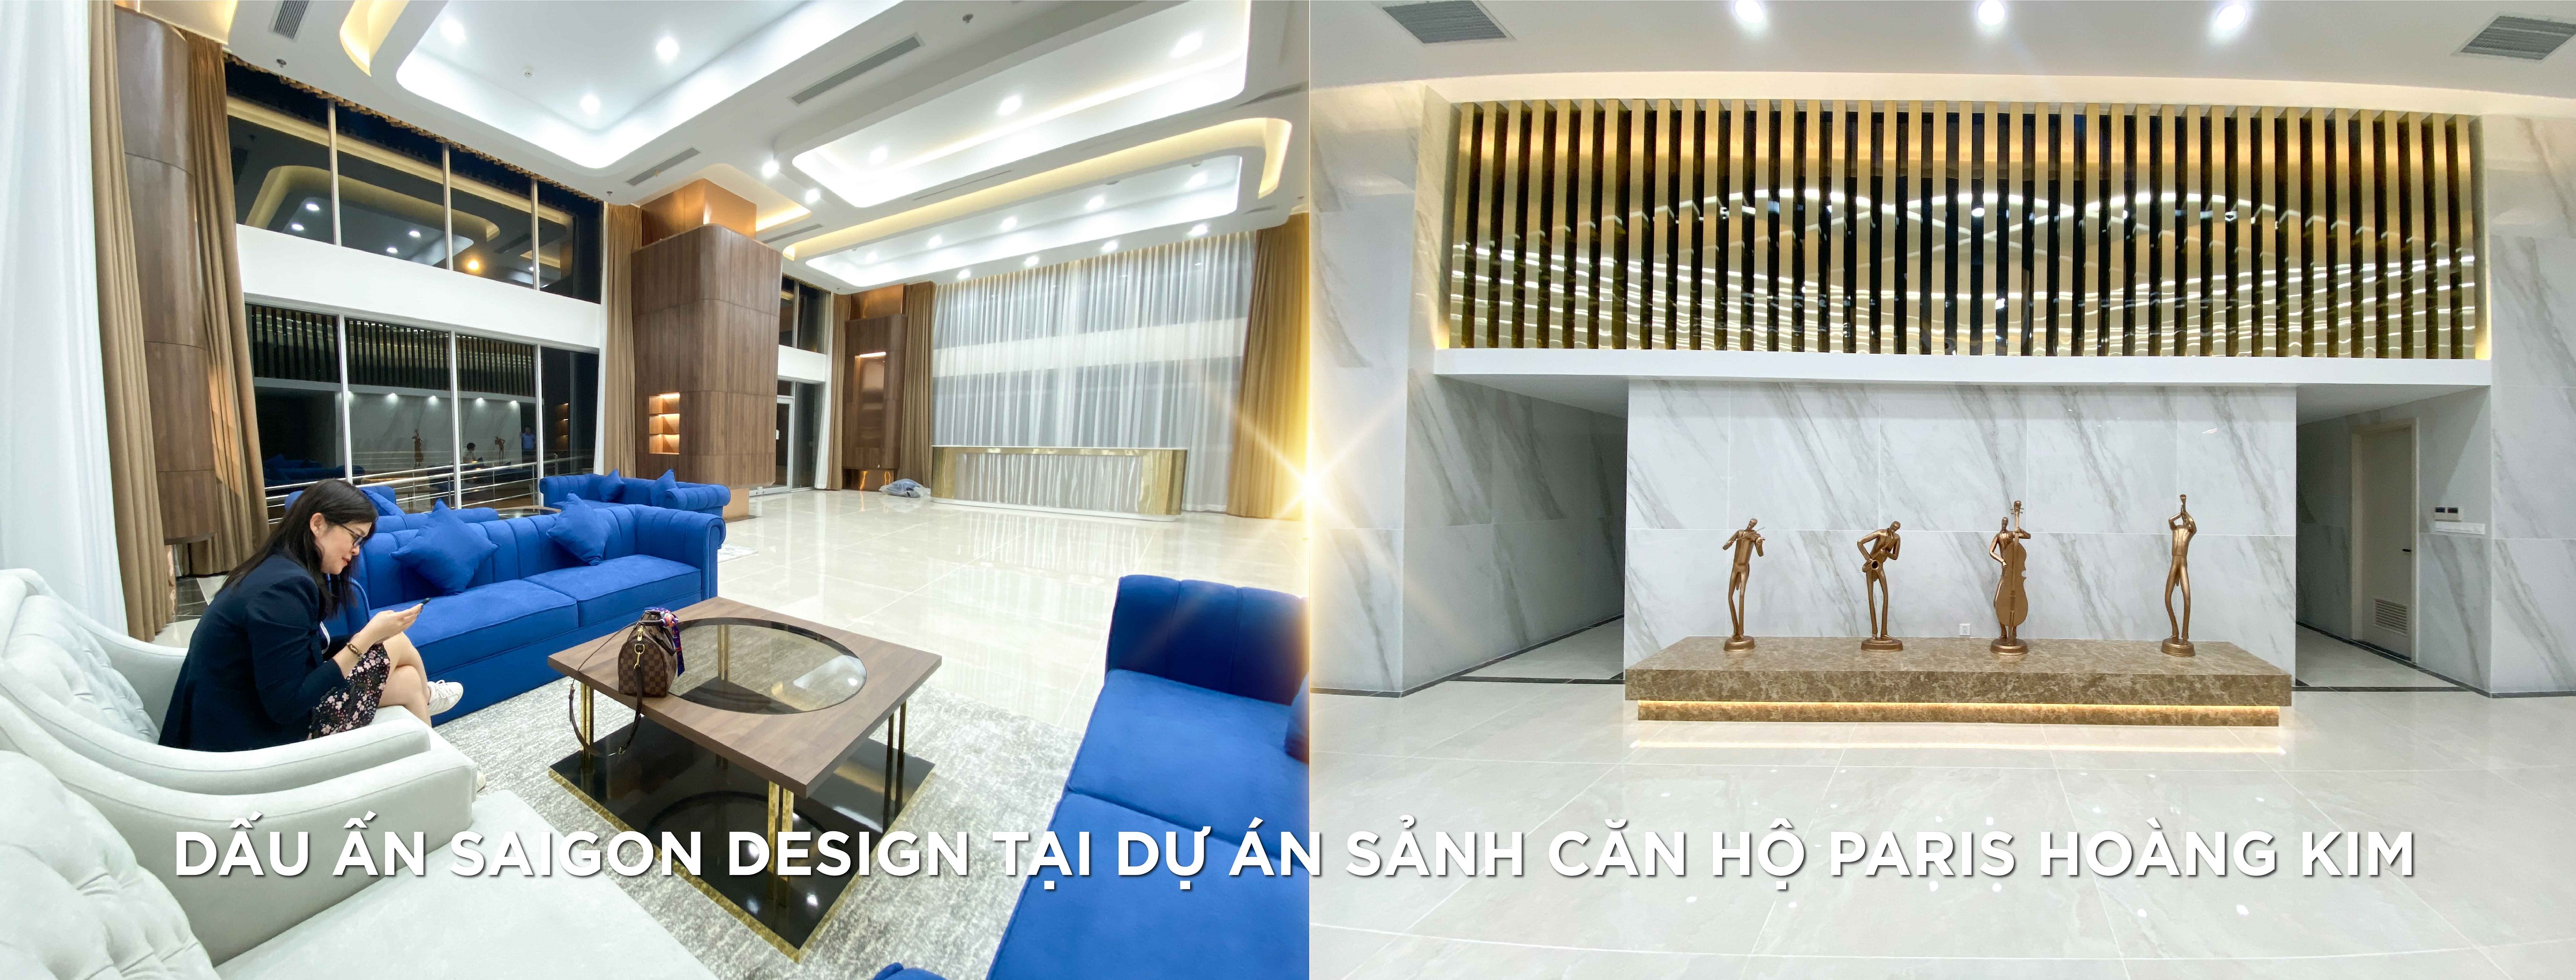 Thiết kế thi công nội thất căn hộ Paris Hoàng Kim